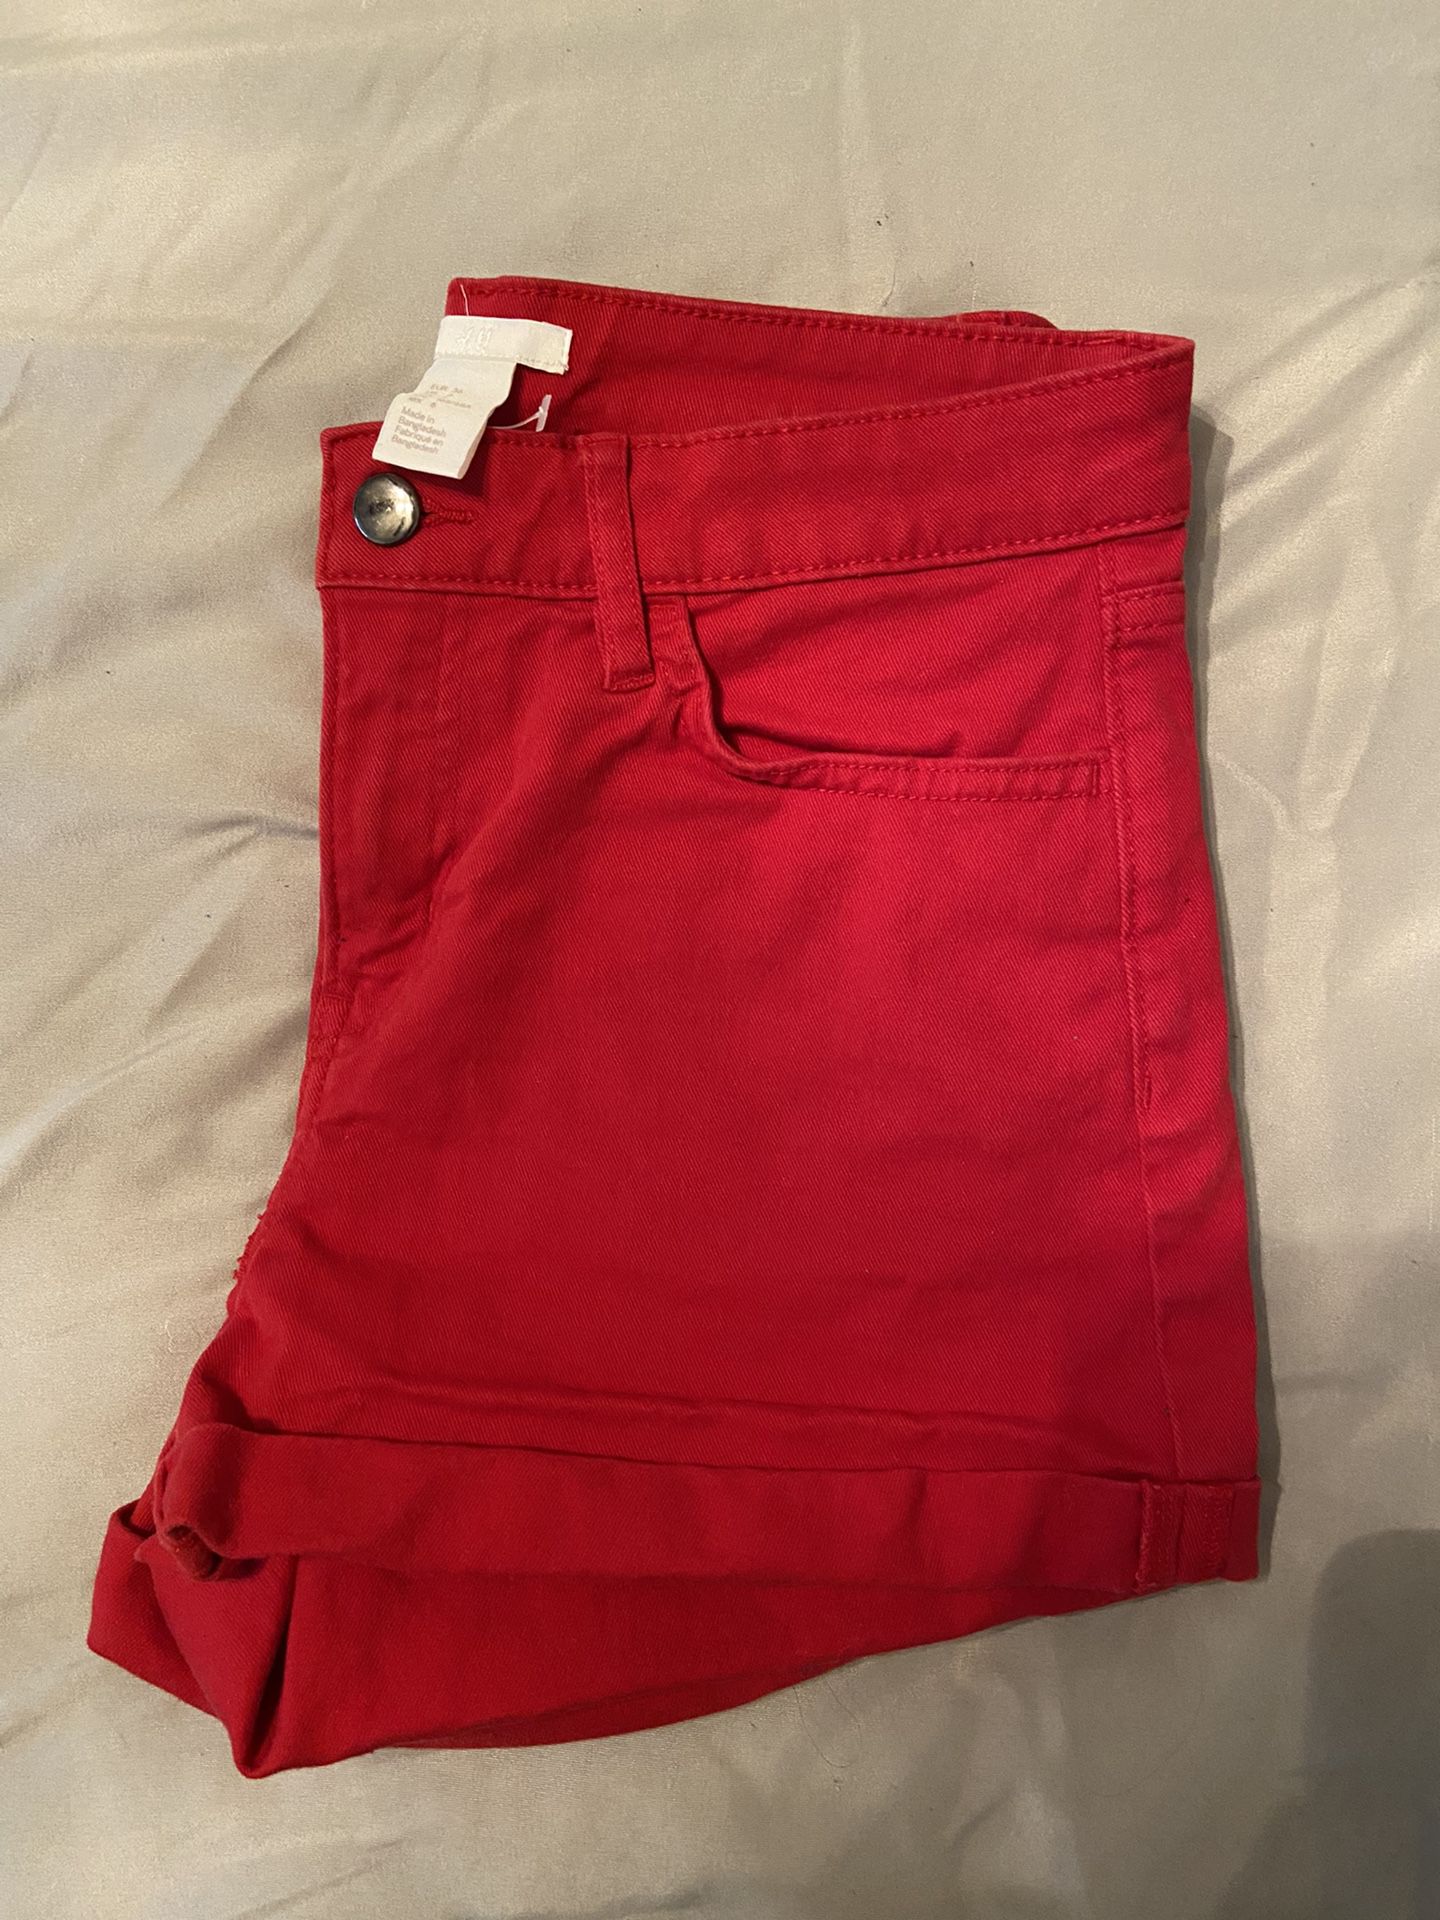 Shorts And Shirts (New No Tags) 